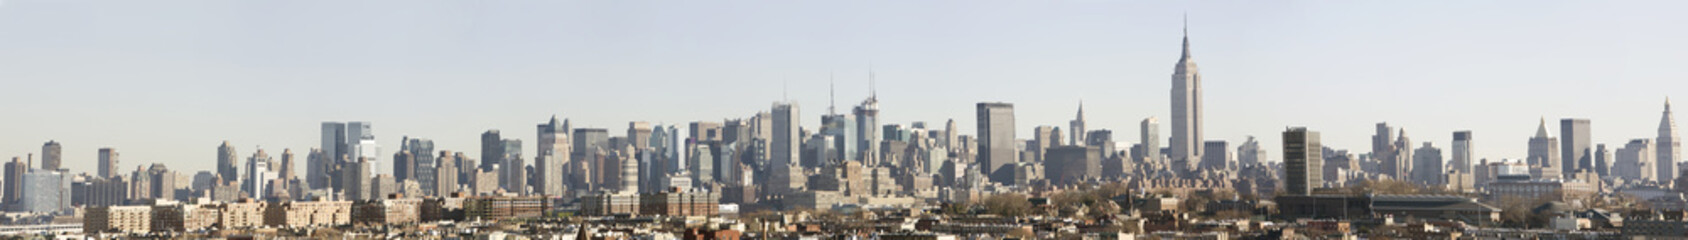 Fototapeta na wymiar Manhattan skyline z urwisk Jersey City, zakładać 9-11